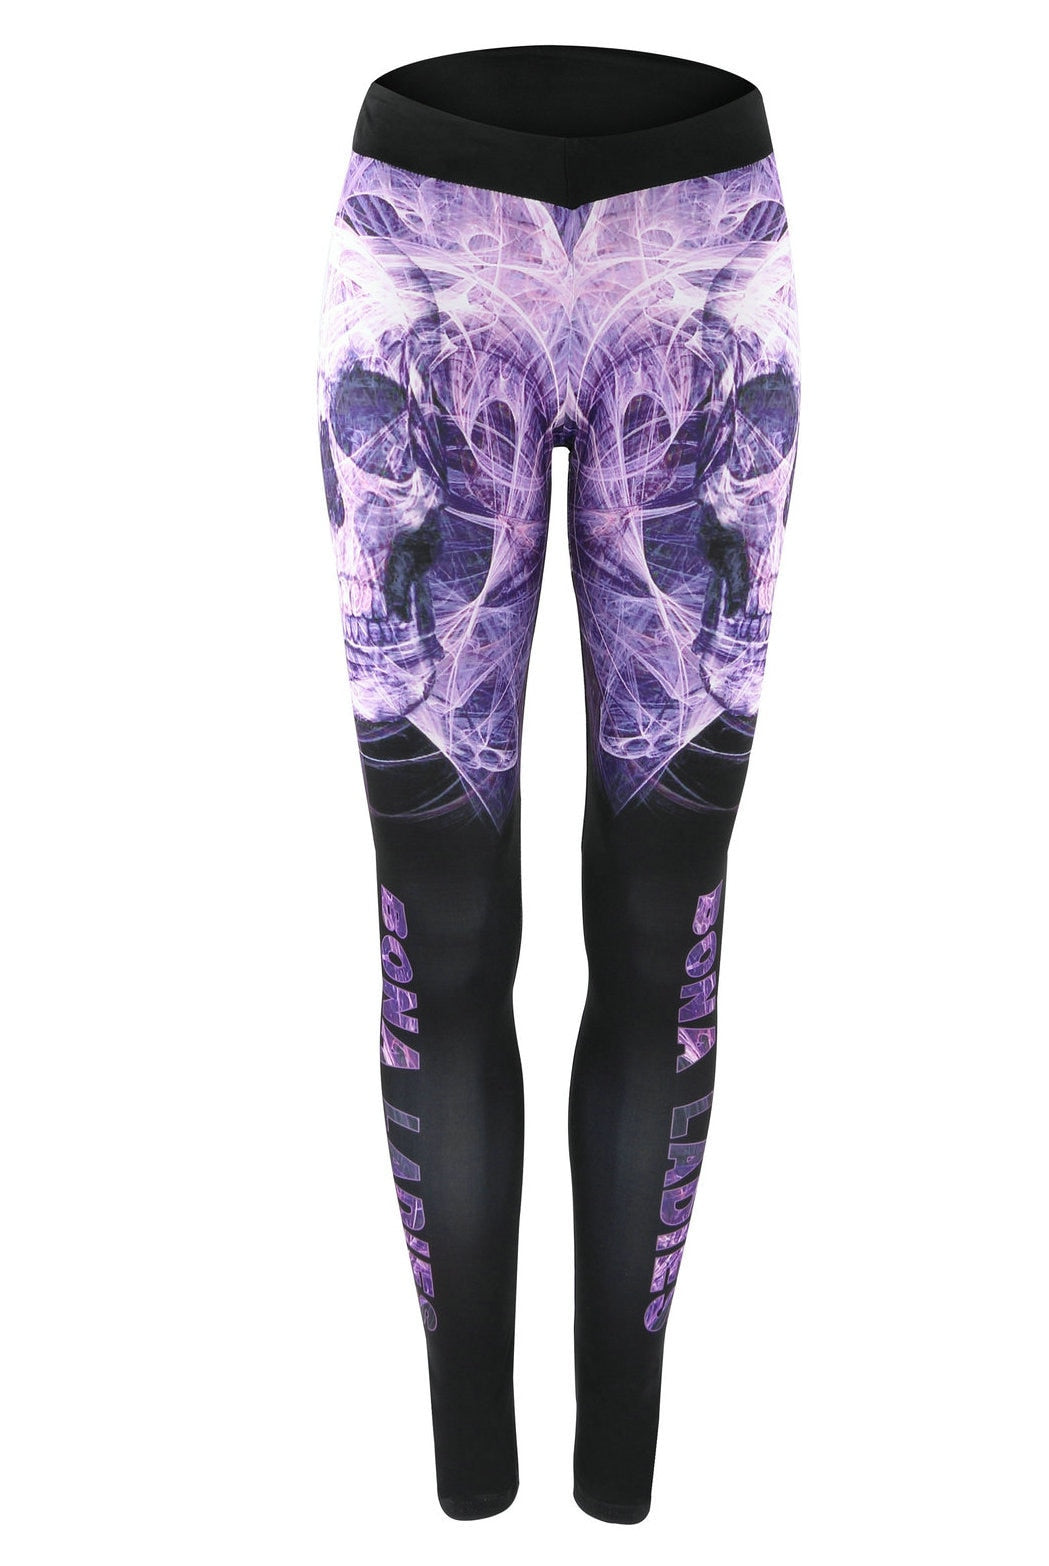 Middle Waist Elastic Leggins Sport Women Fitness Printed skull purple Sport Leggings for Women Yoga Pants